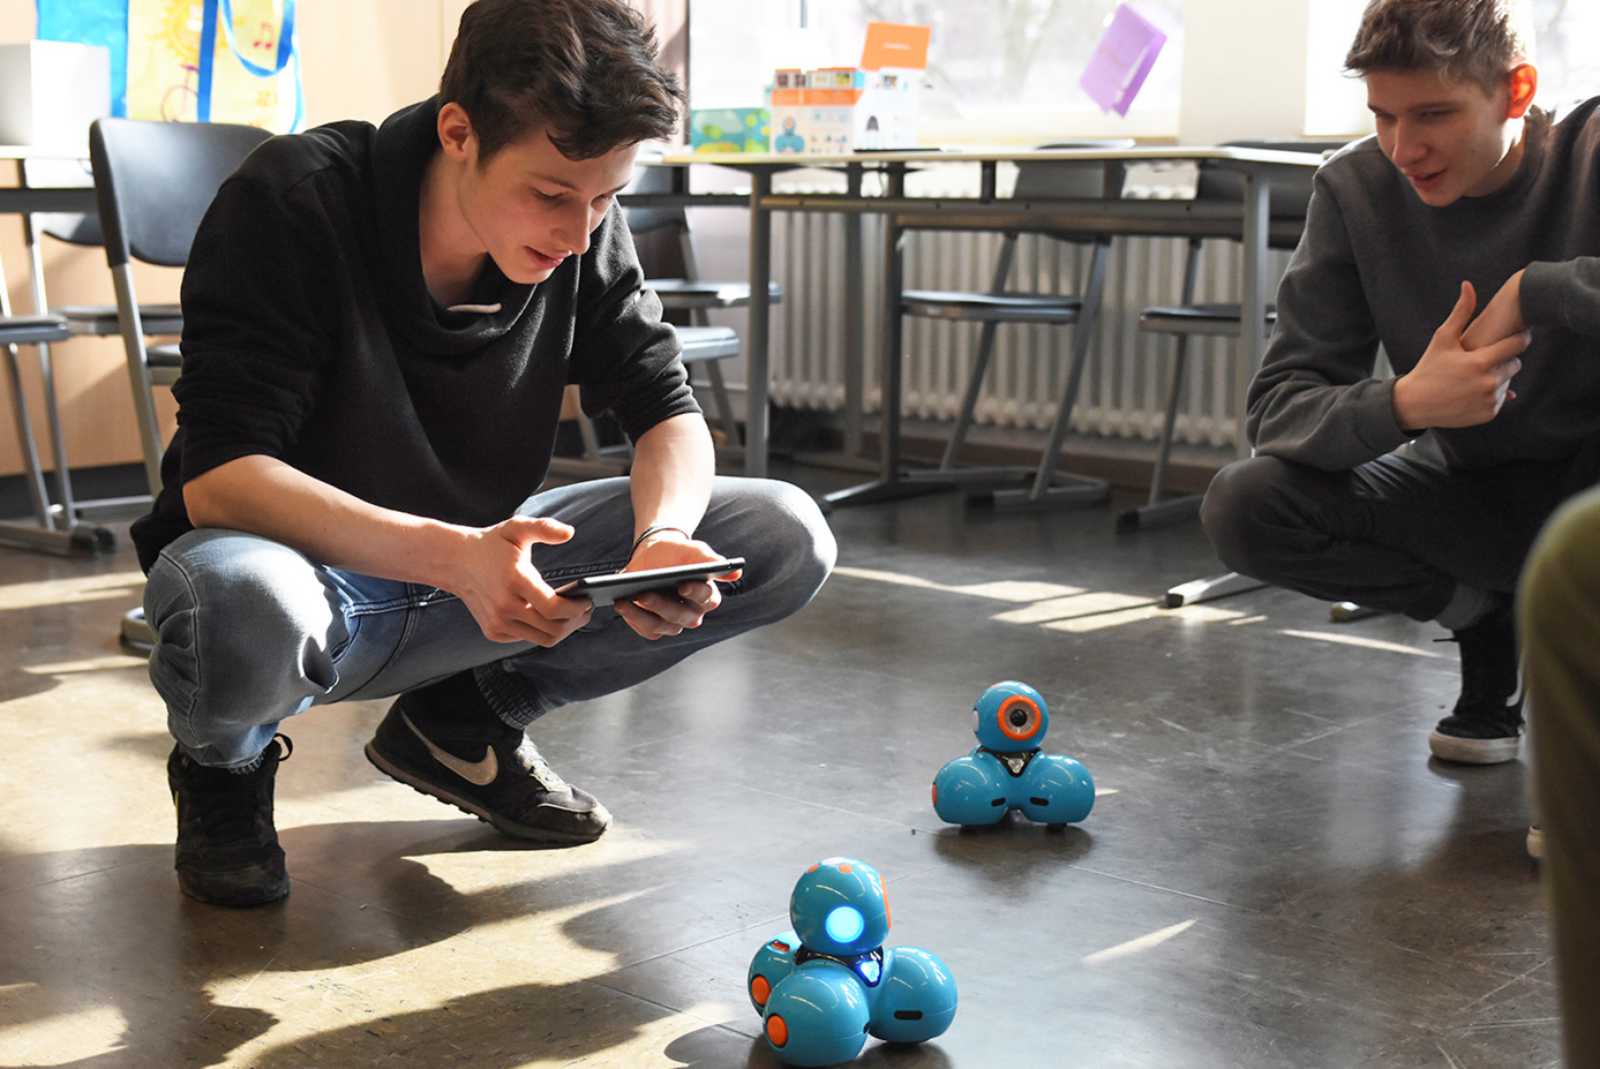 Der Fachbereich Elektrotechnik und Informatik hatte Roboter mitgebracht, die die Schüler über Tablets programmierten. (Foto: FH Münster/Pressestelle)